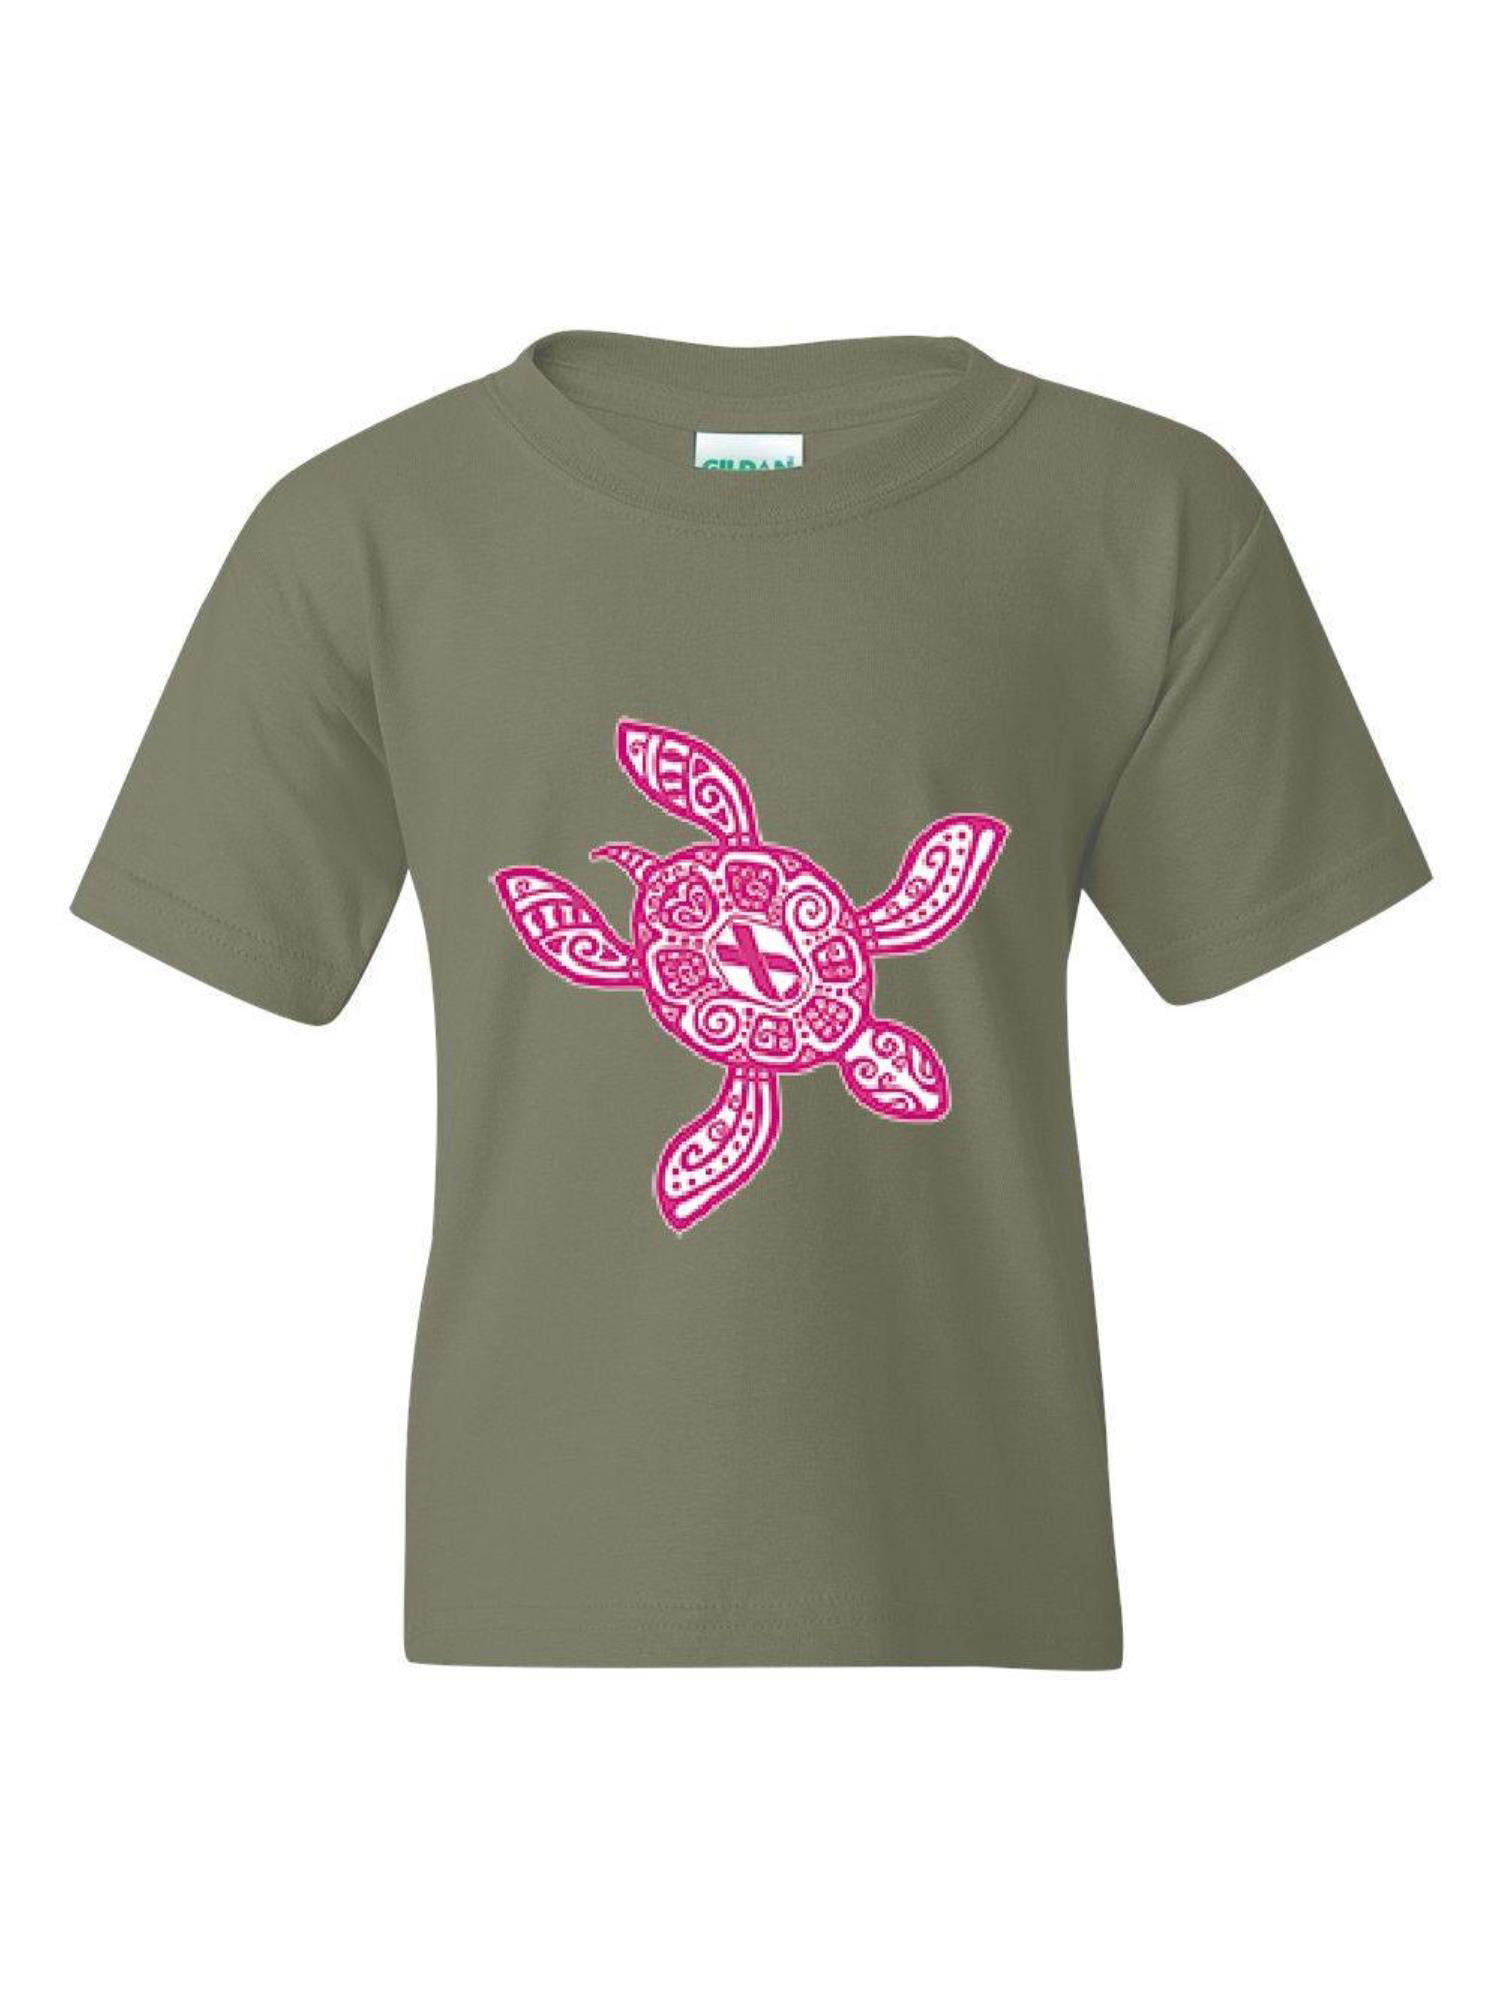 Ocean Tribal Hawaiian Sea Turtle Kids Girls Boys Youth Top Tee T-Shirt 